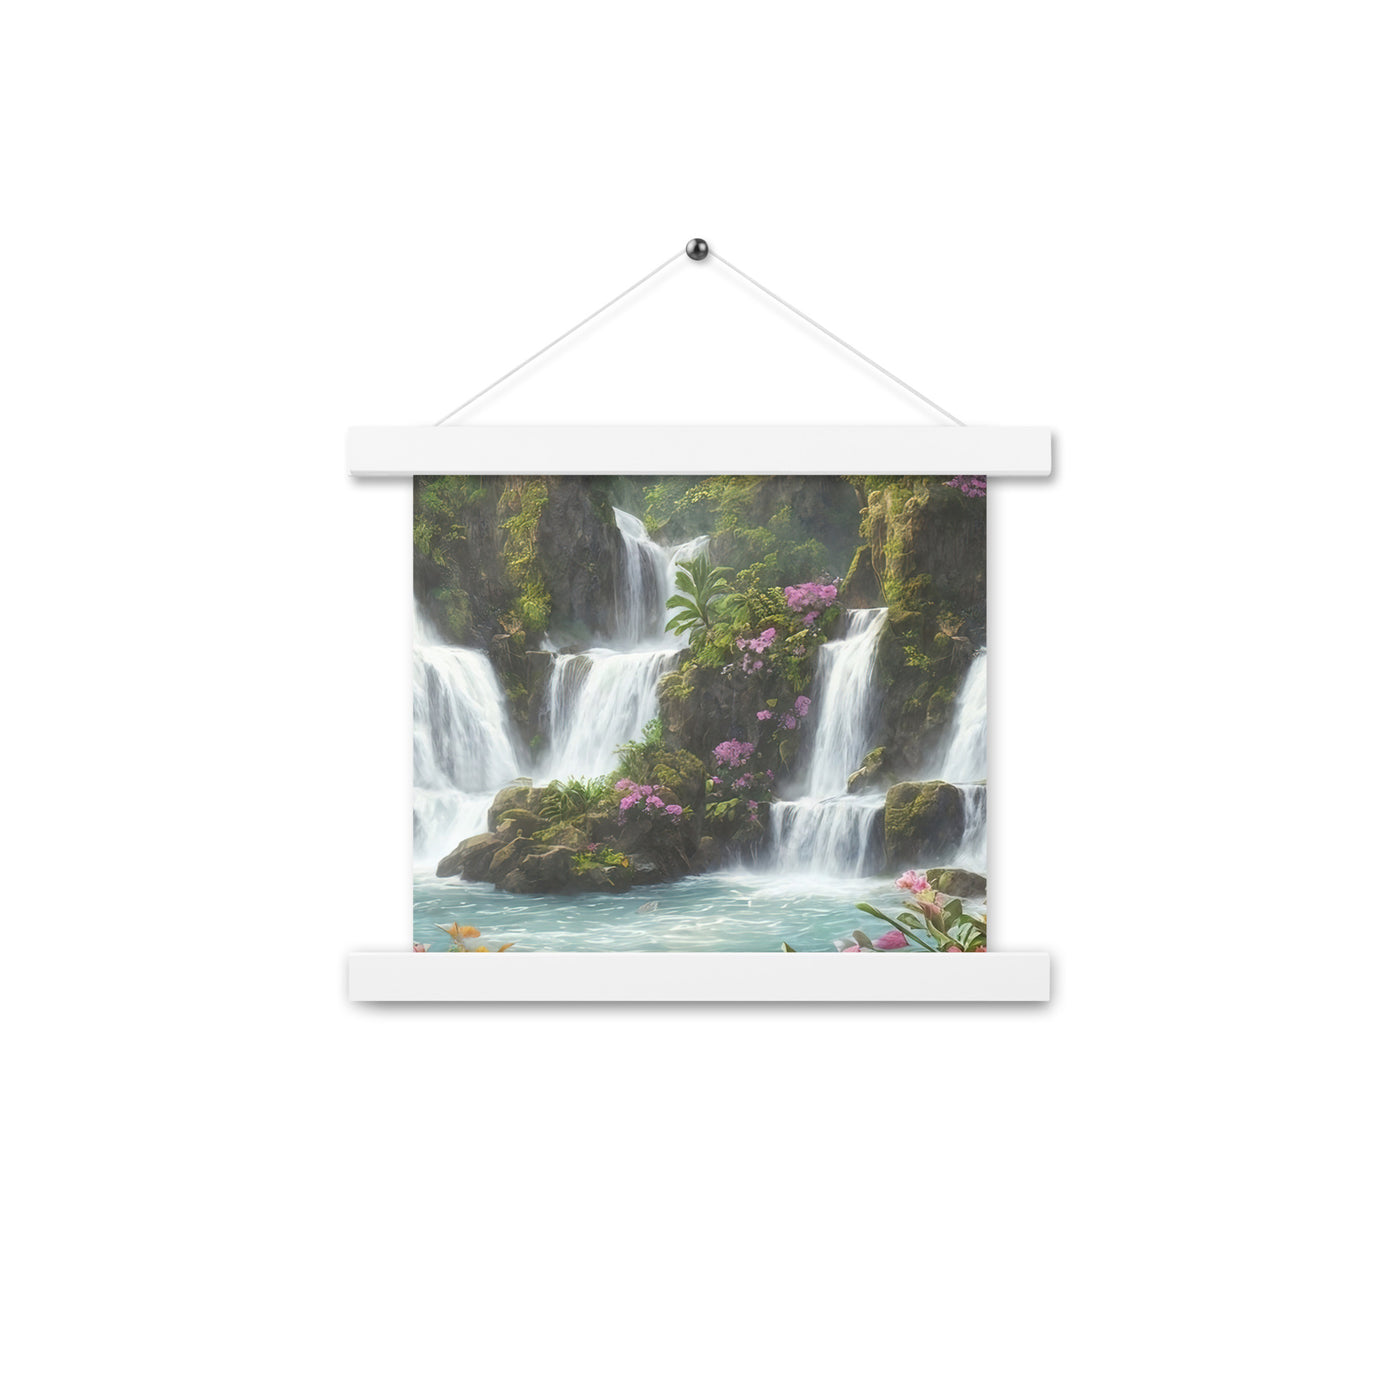 Wasserfall im Wald und Blumen - Schöne Malerei - Premium Poster mit Aufhängung camping xxx 25.4 x 25.4 cm